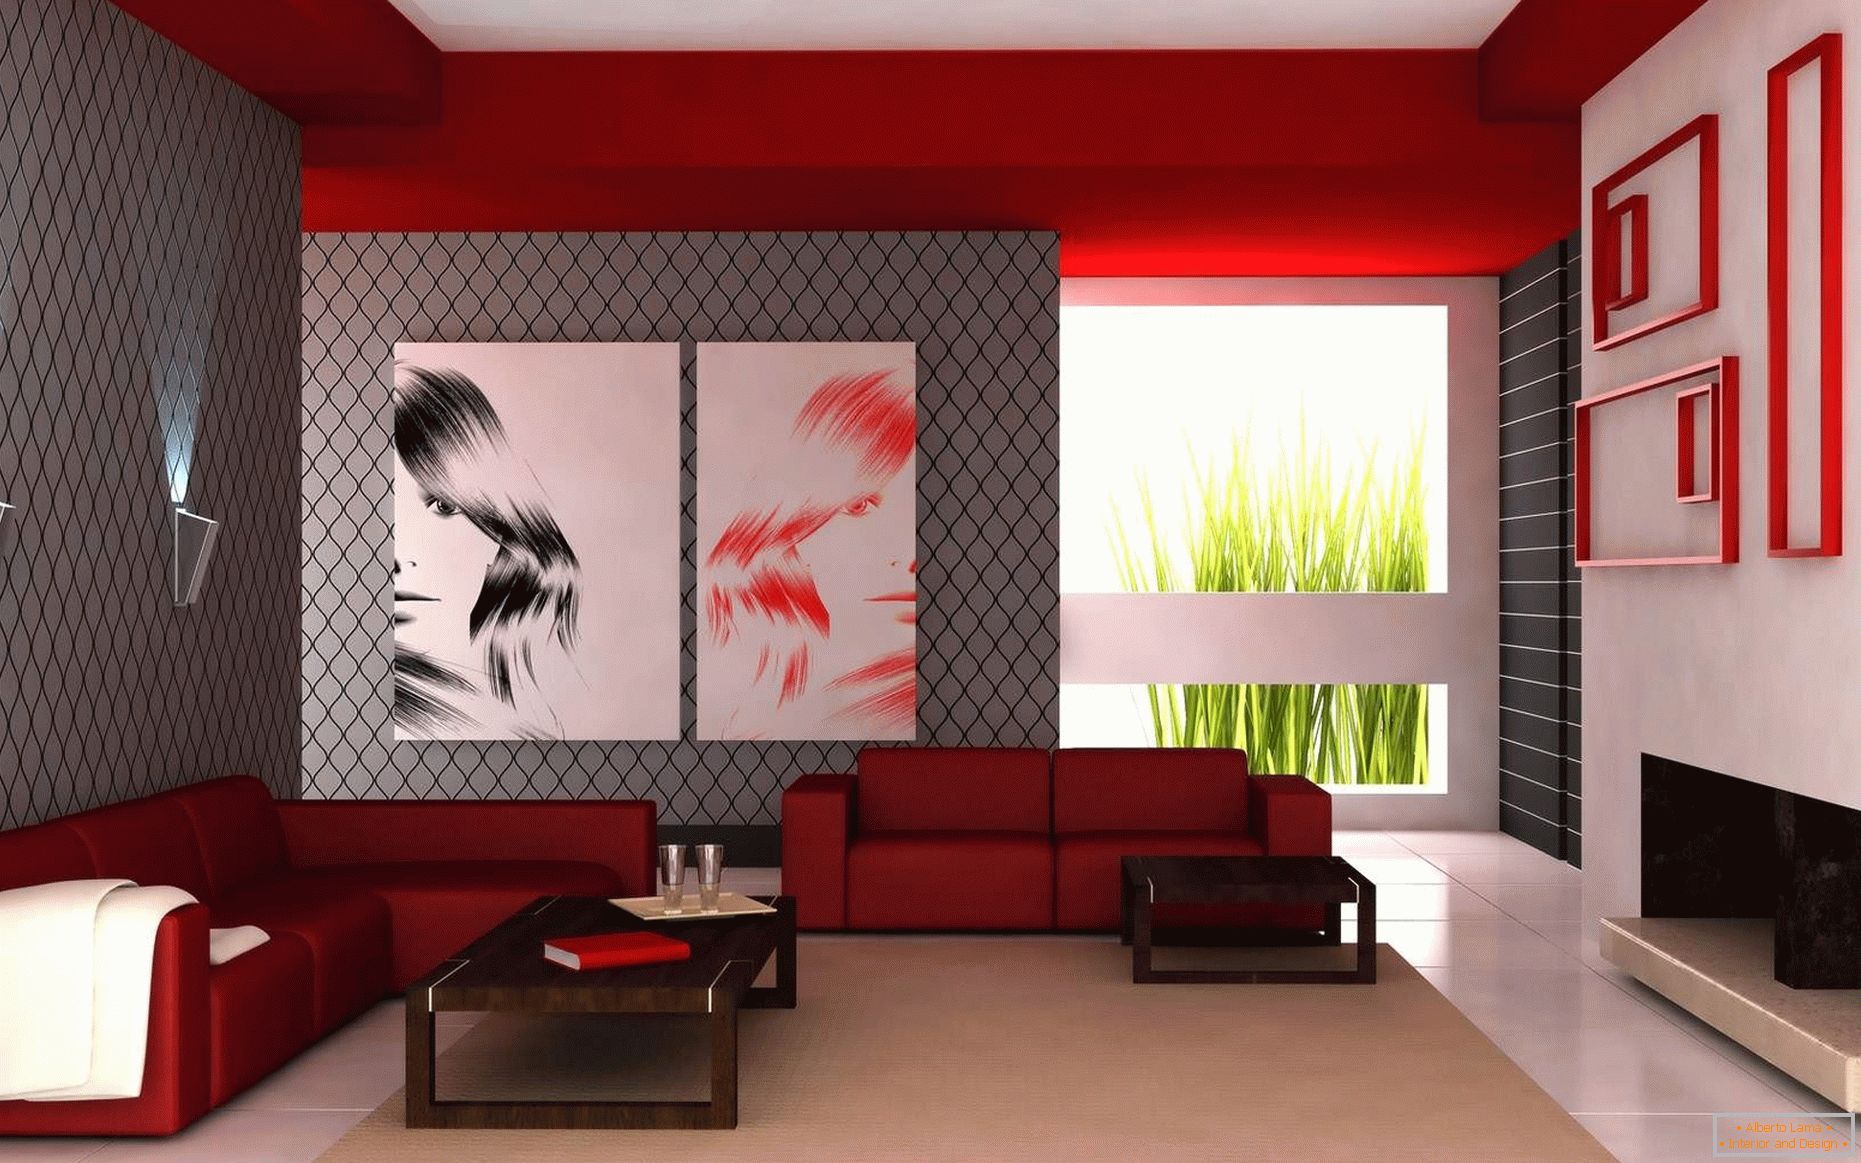 Kombinacija bele, rdeče in sive barve v dnevni sobi